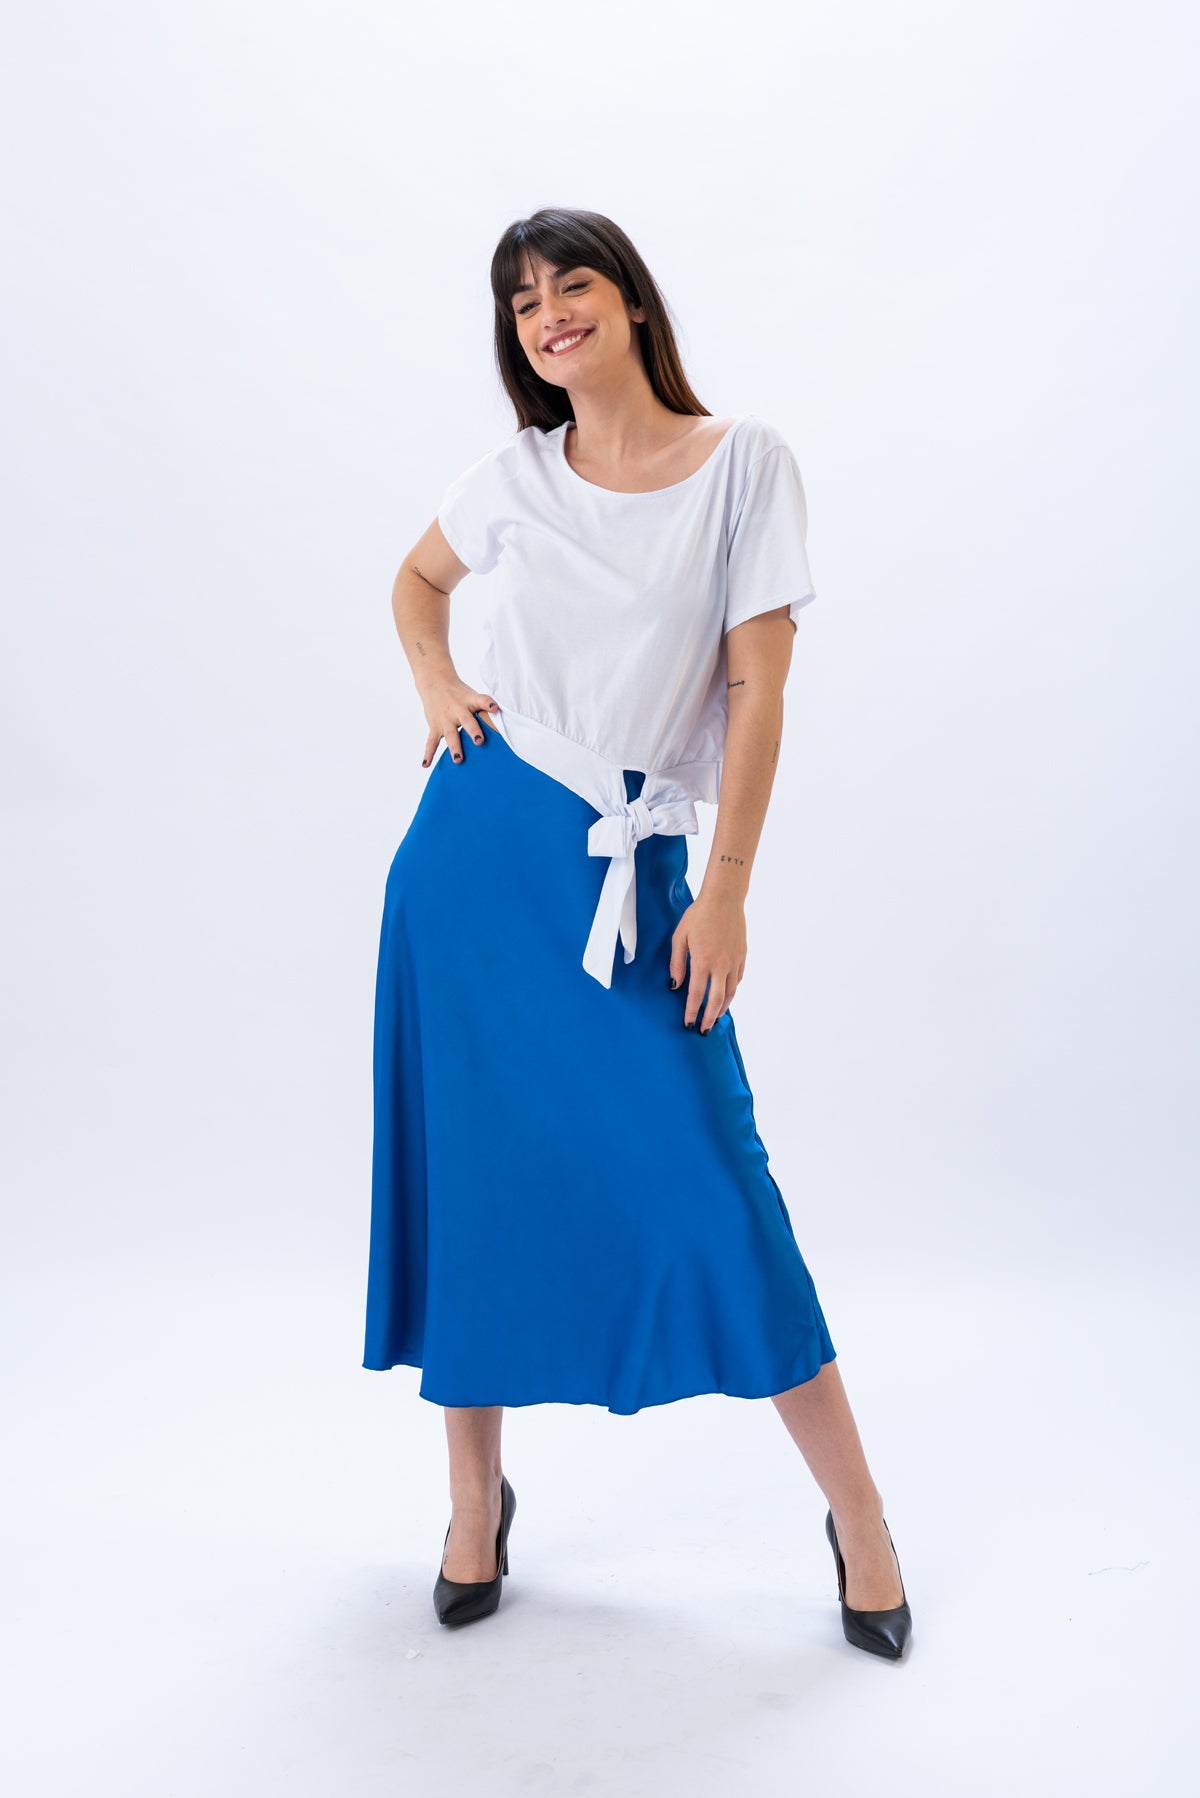 Remera Nodo - Blanca | Blusas, Camisas y Remeras | Viviana Méndez - Remera Nodo Blanca - Viviana Méndez